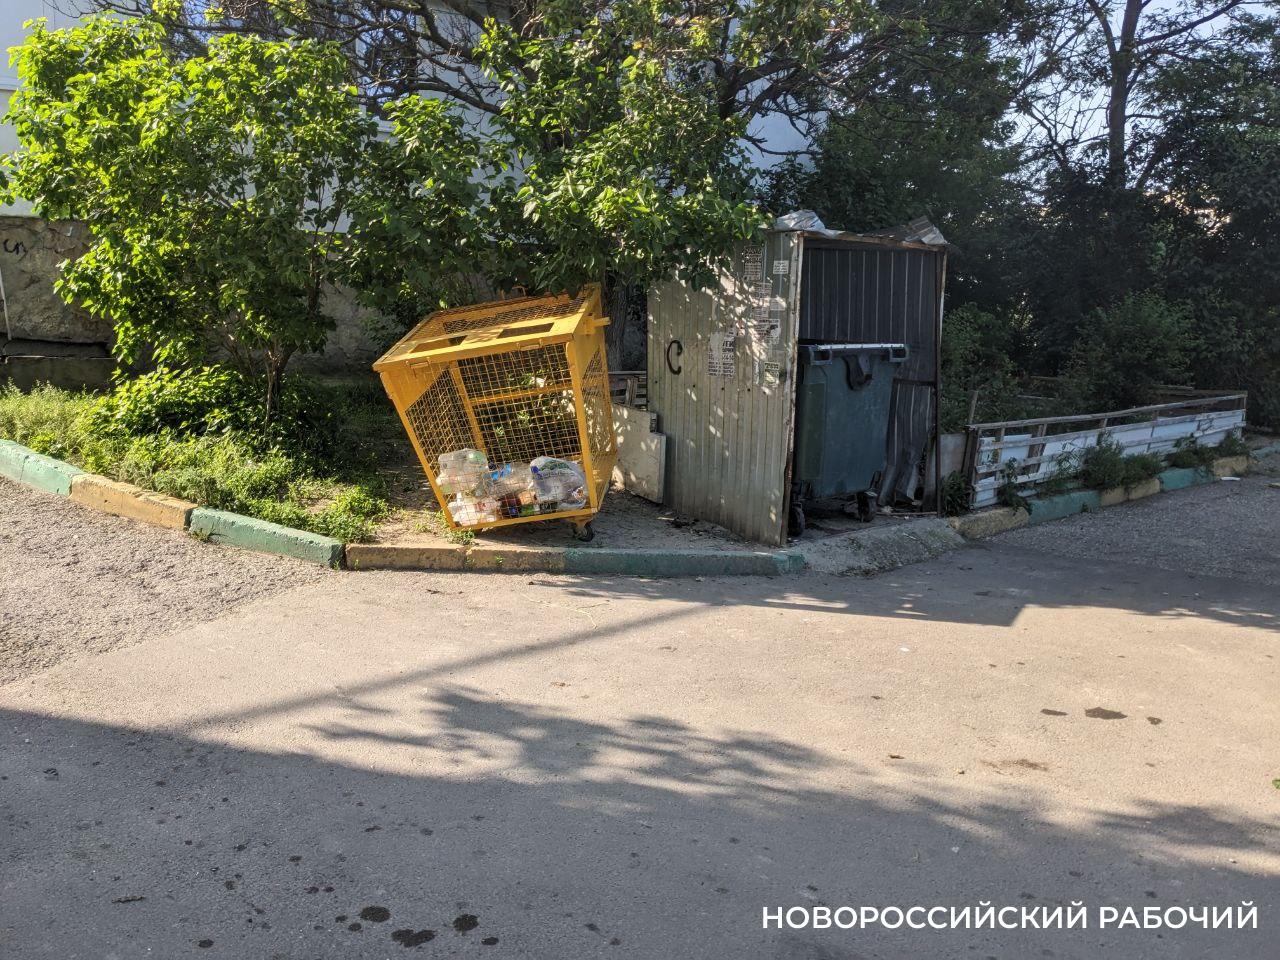 Жёлтые контейнеры для мусора во дворах Новороссийска. Почему отношение к ним столь неоднозначное?